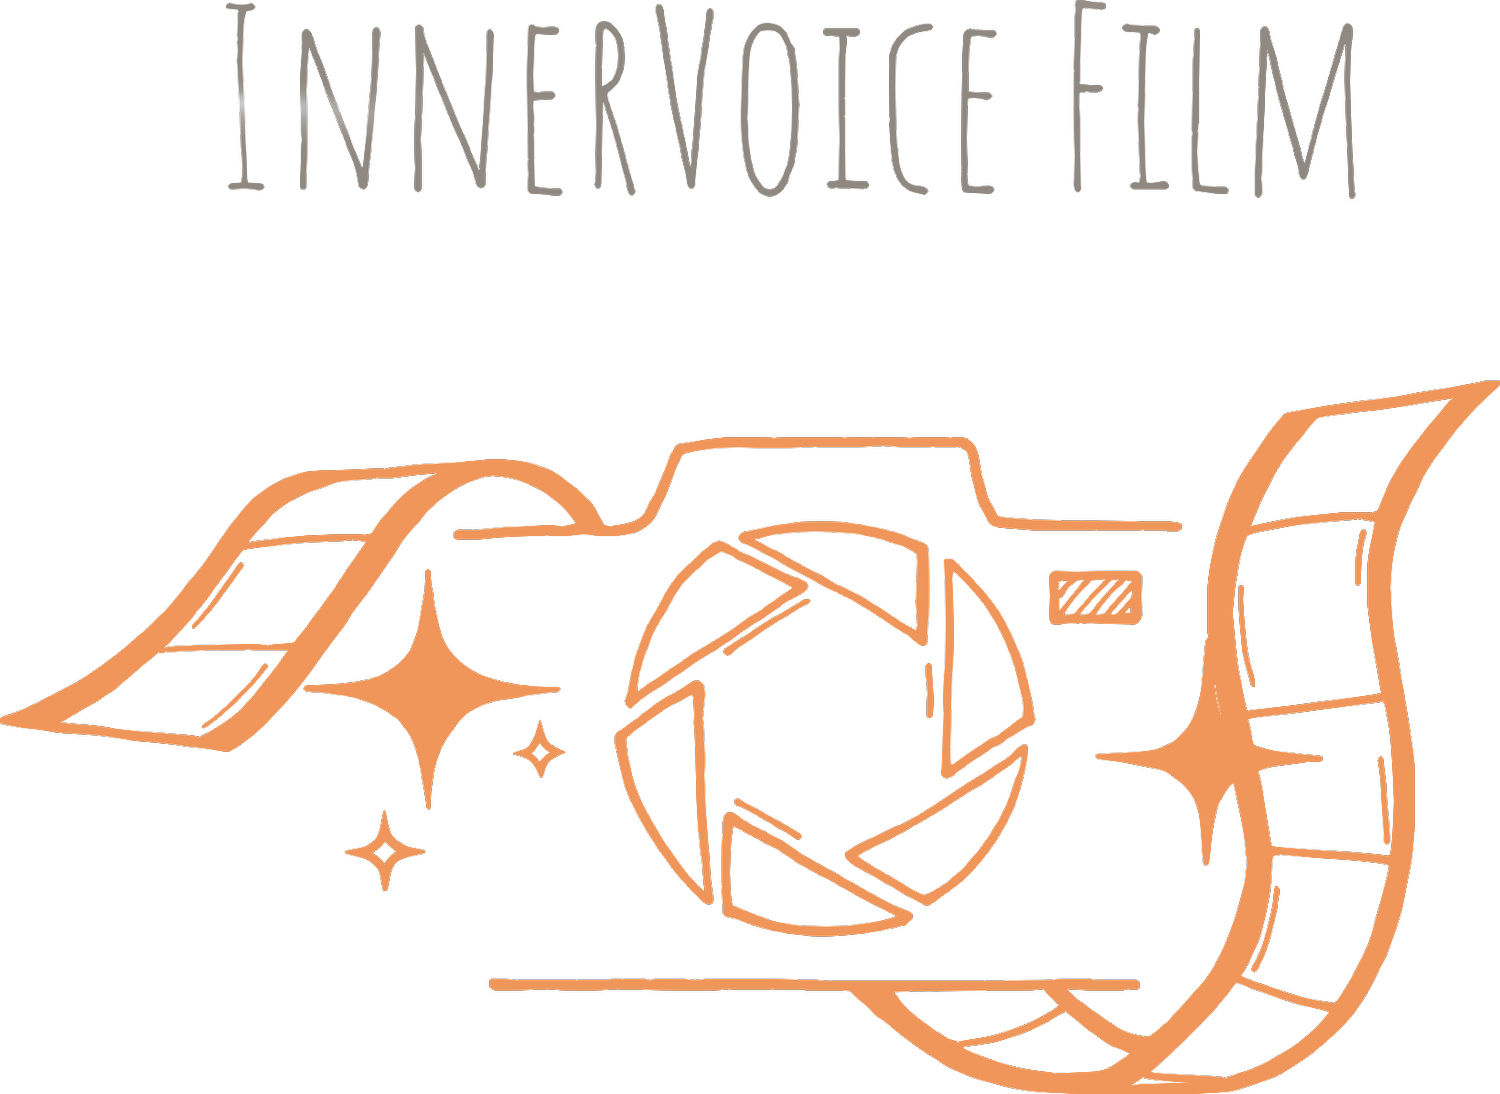 InnerVoice Film